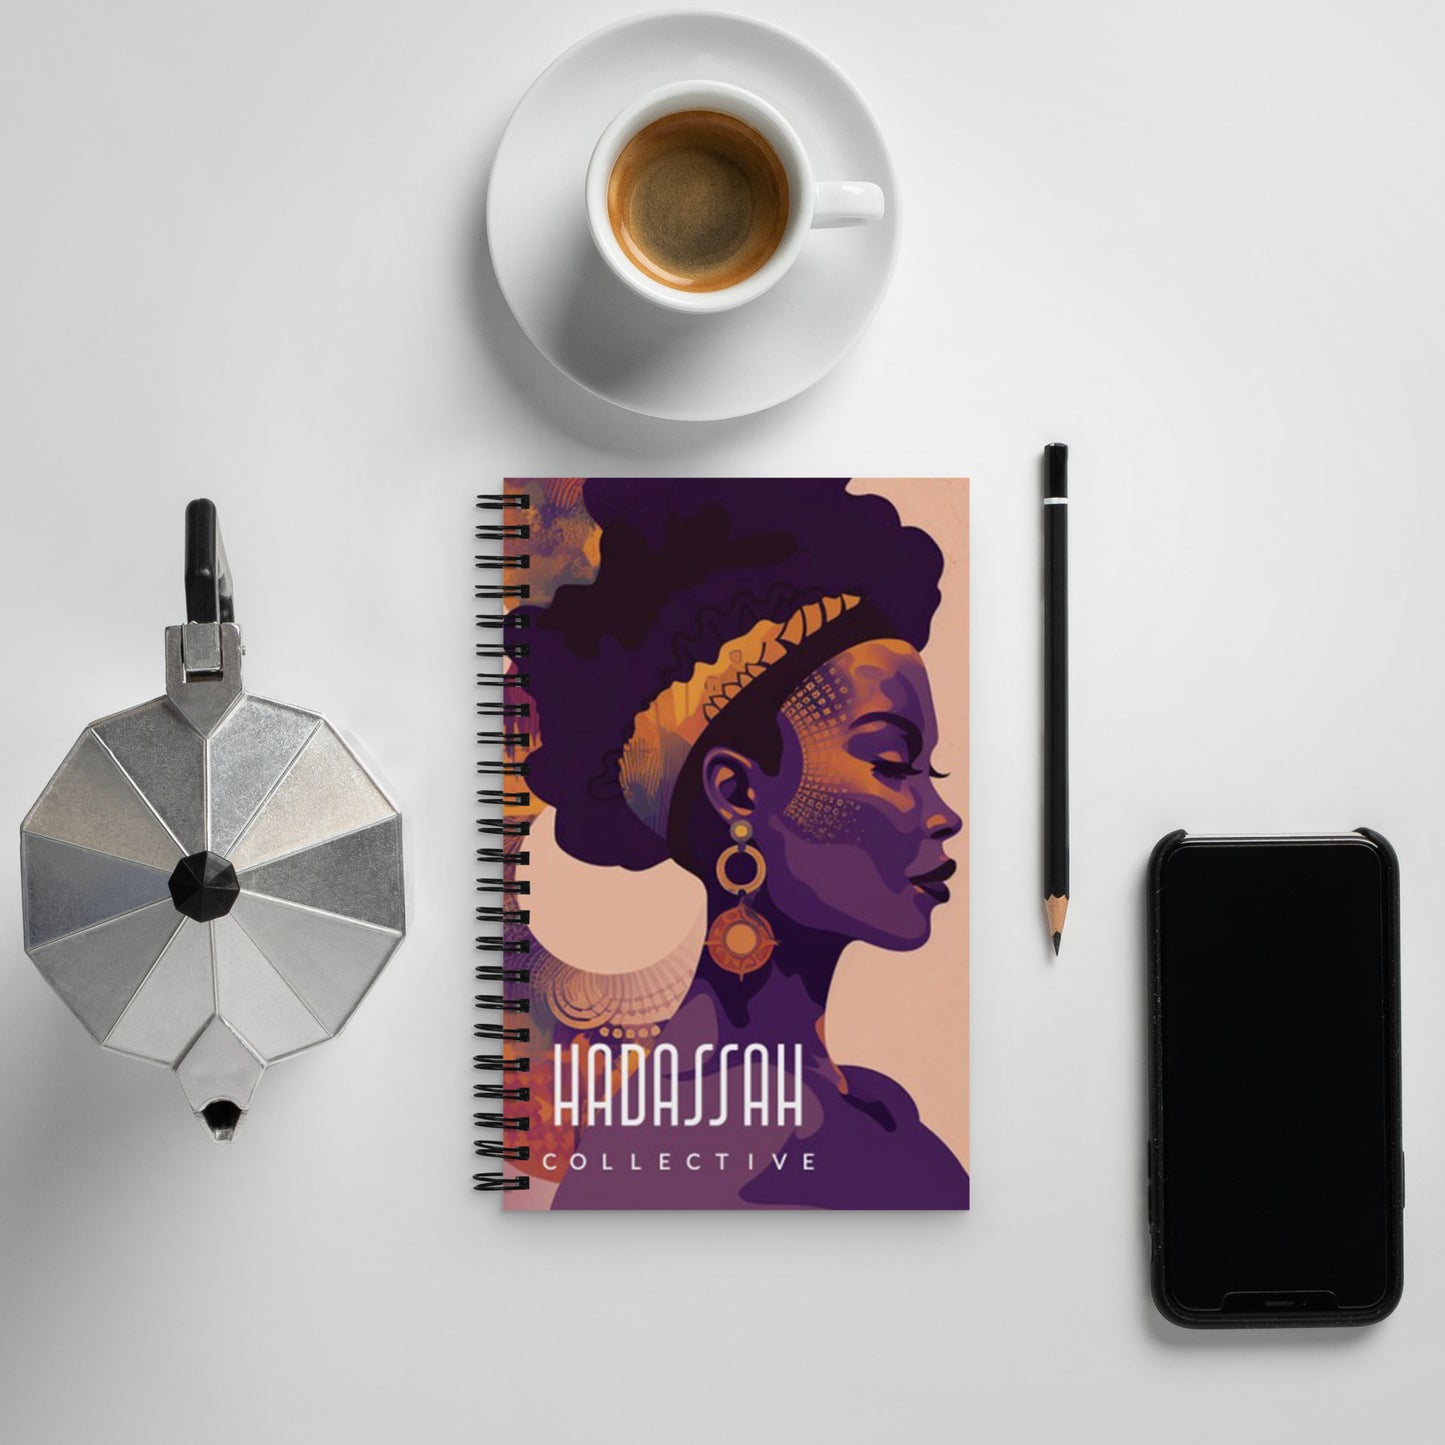 HADASSAH COLLECTIVE: Spiral notebook